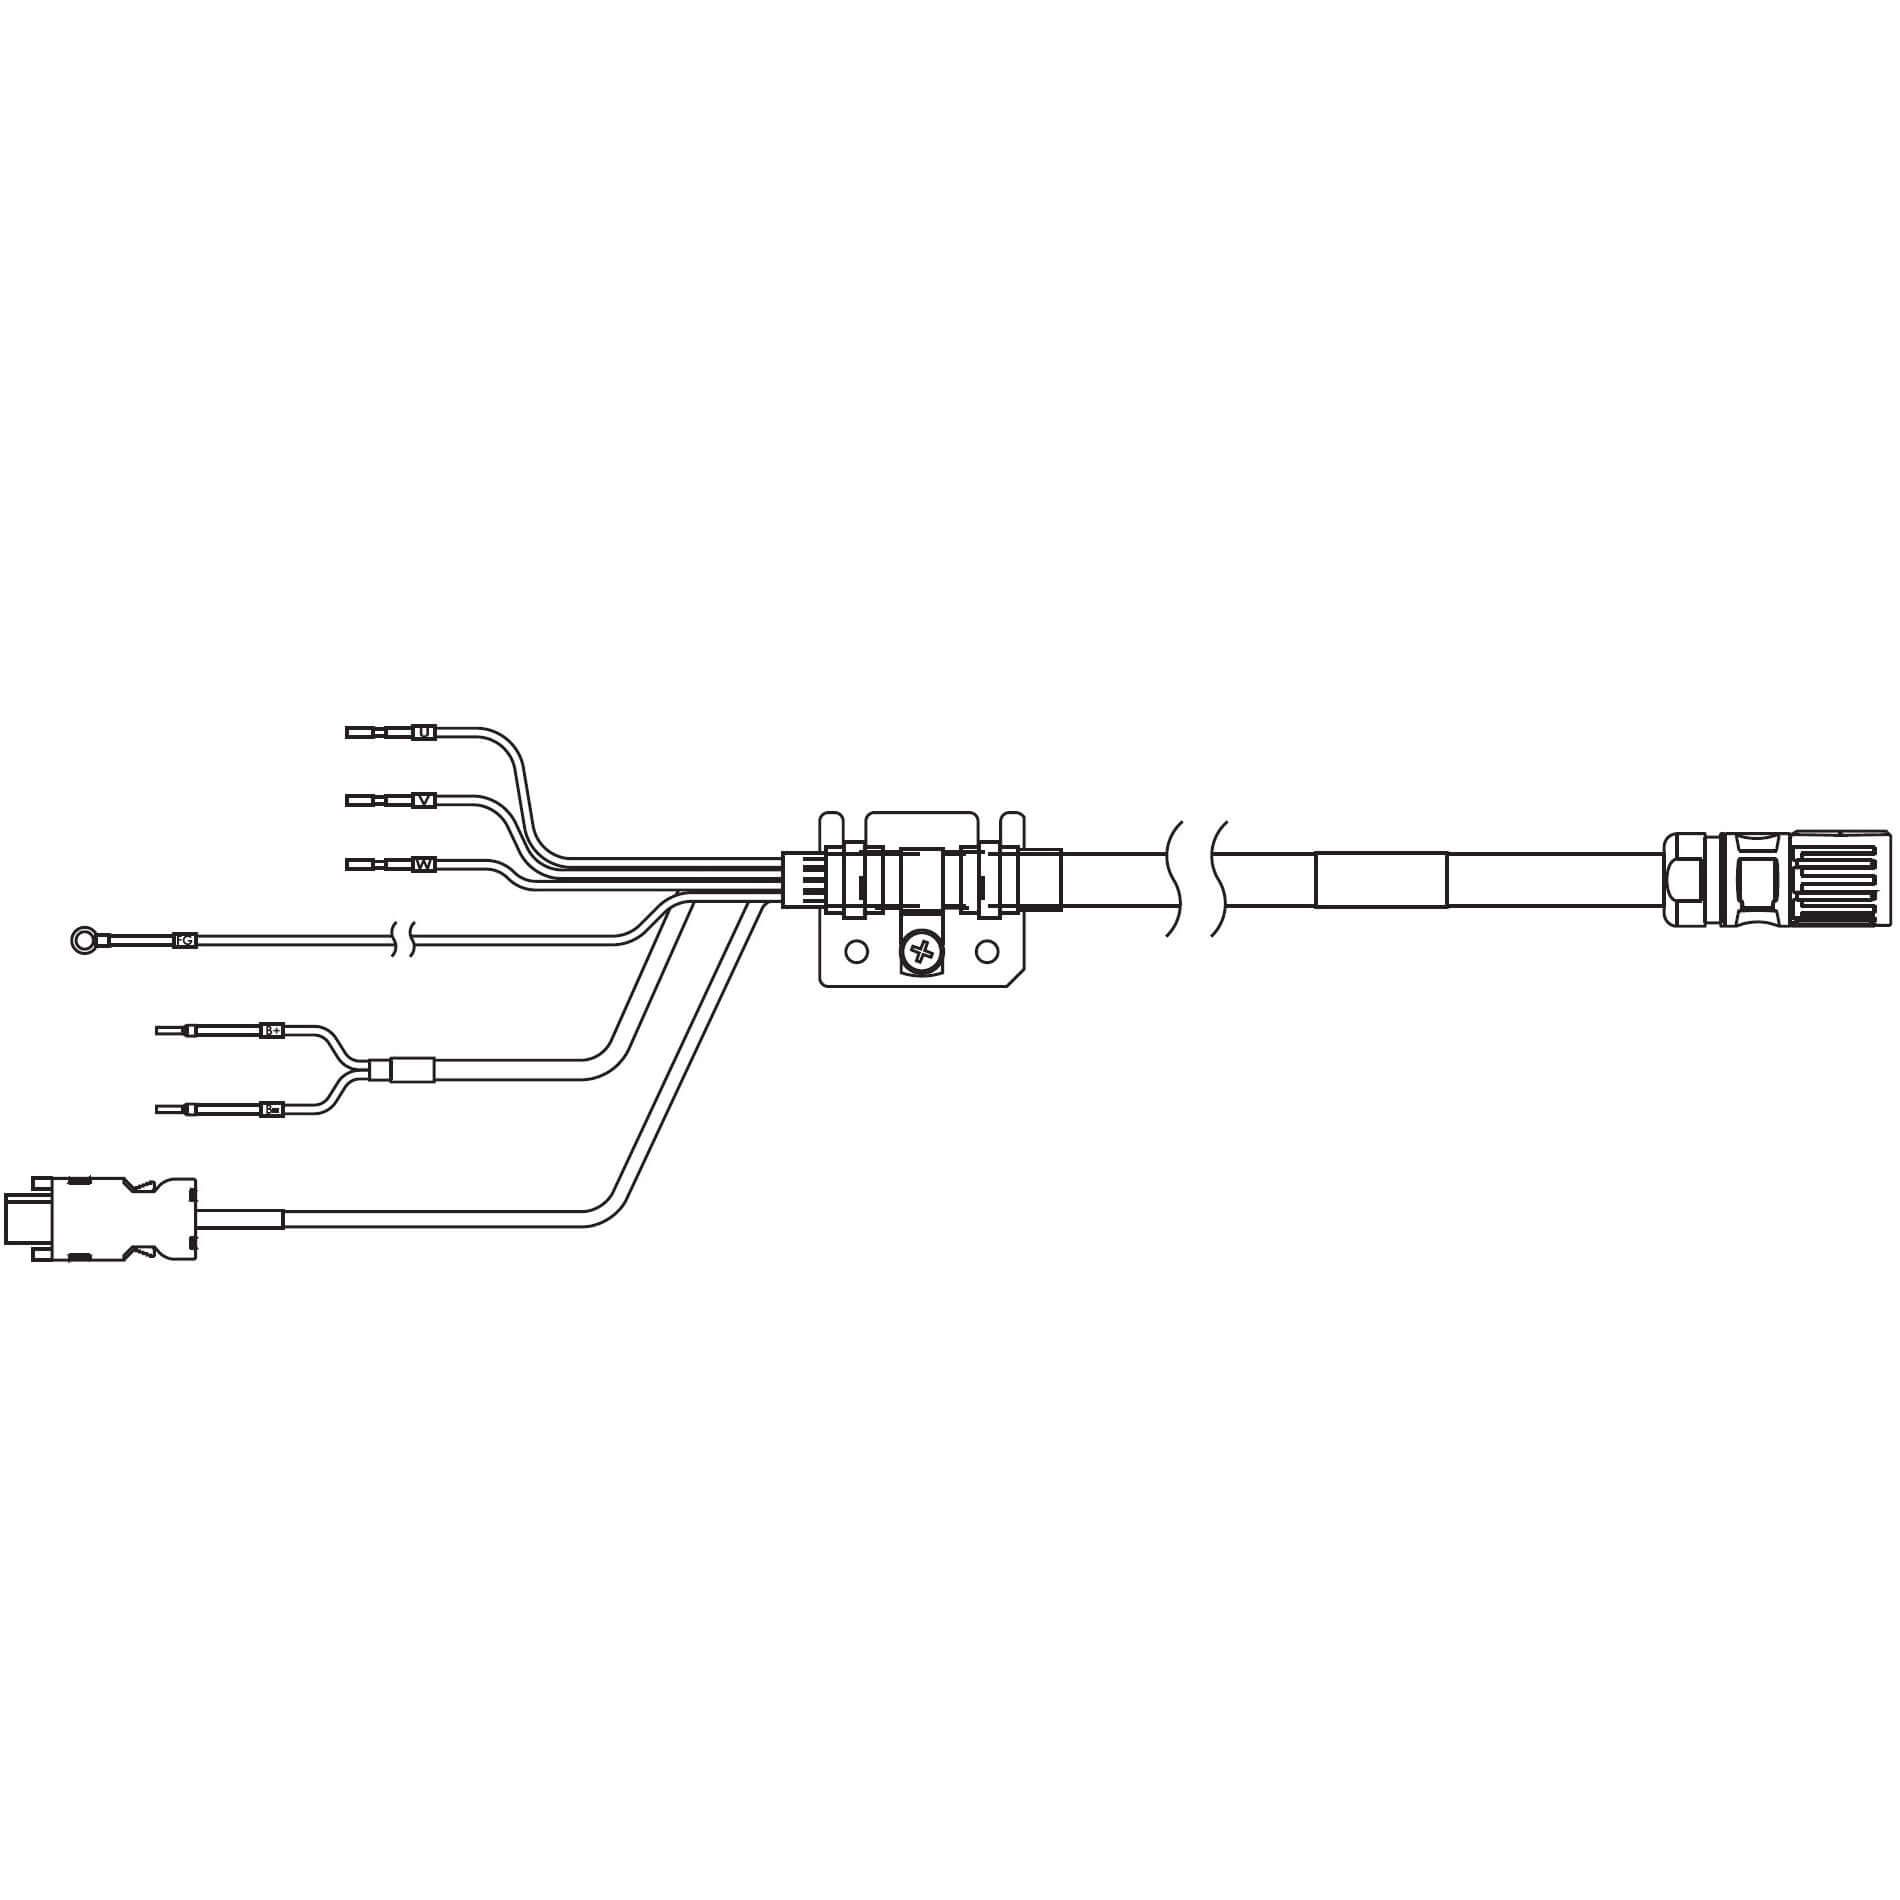 1S-Servomotor mit Safe Motion, Integrierte Kabel R88A-CX1C010BF